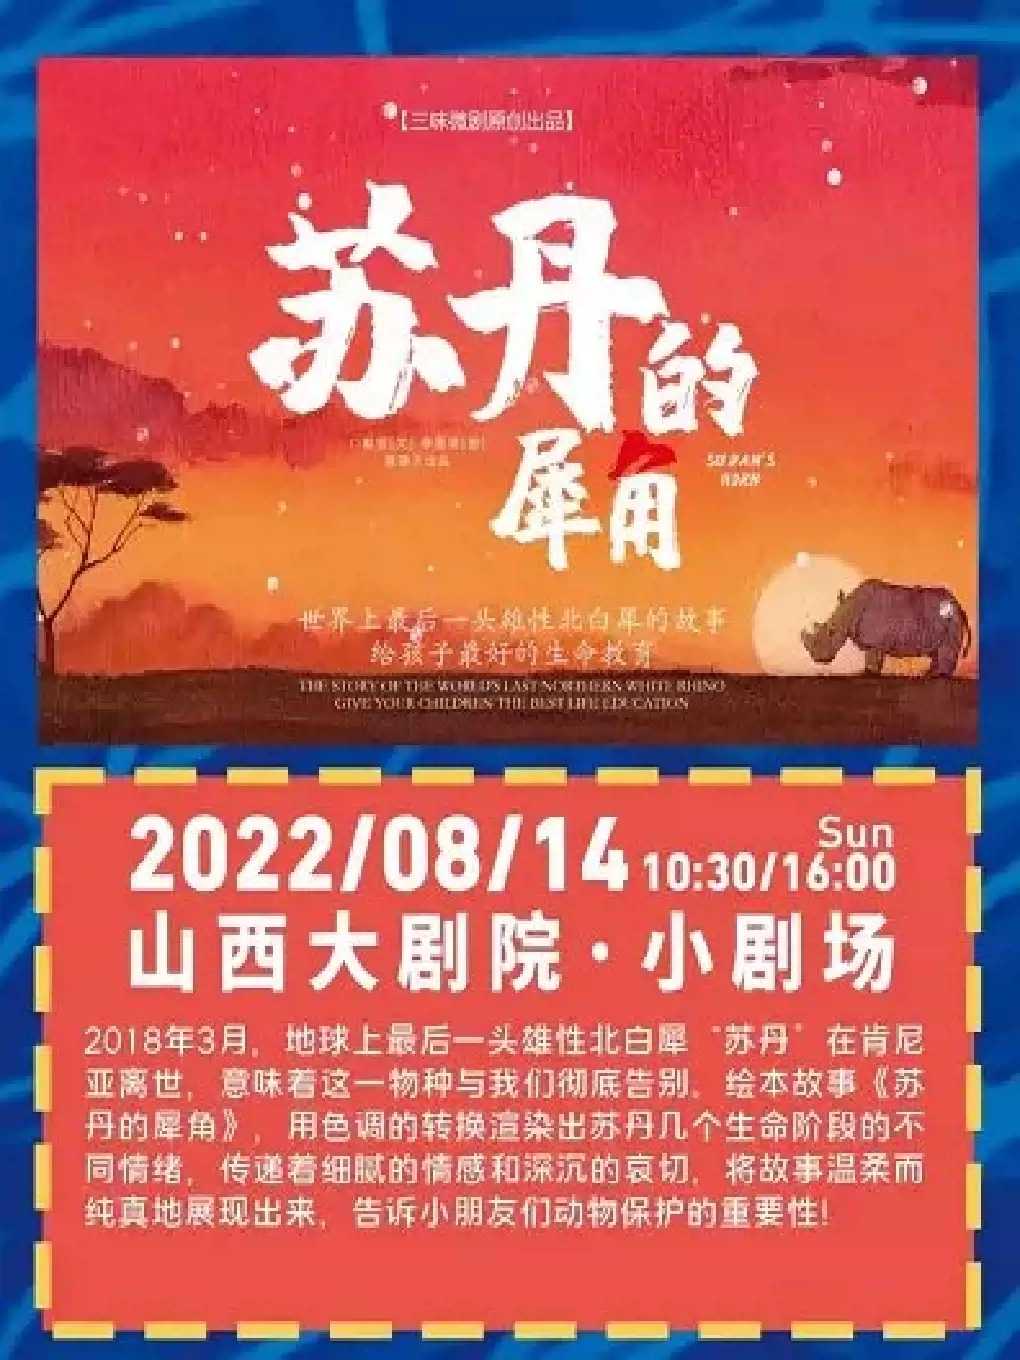 【太原】2022年山西大剧院“打开艺术之门”儿童剧《苏丹的犀角》